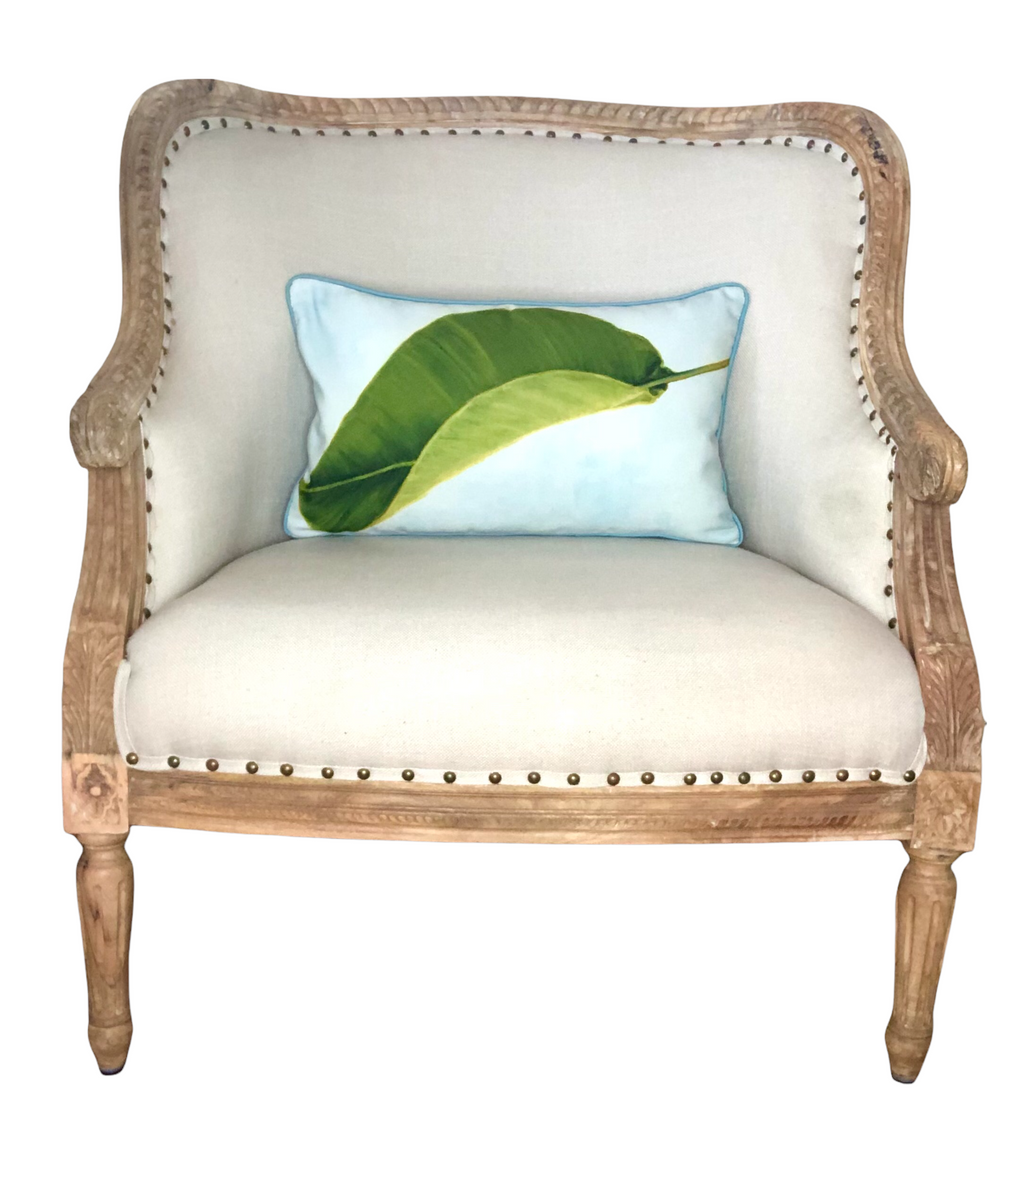 Gallery Pillows, Bird of Paradise Leaf lumbar pillow